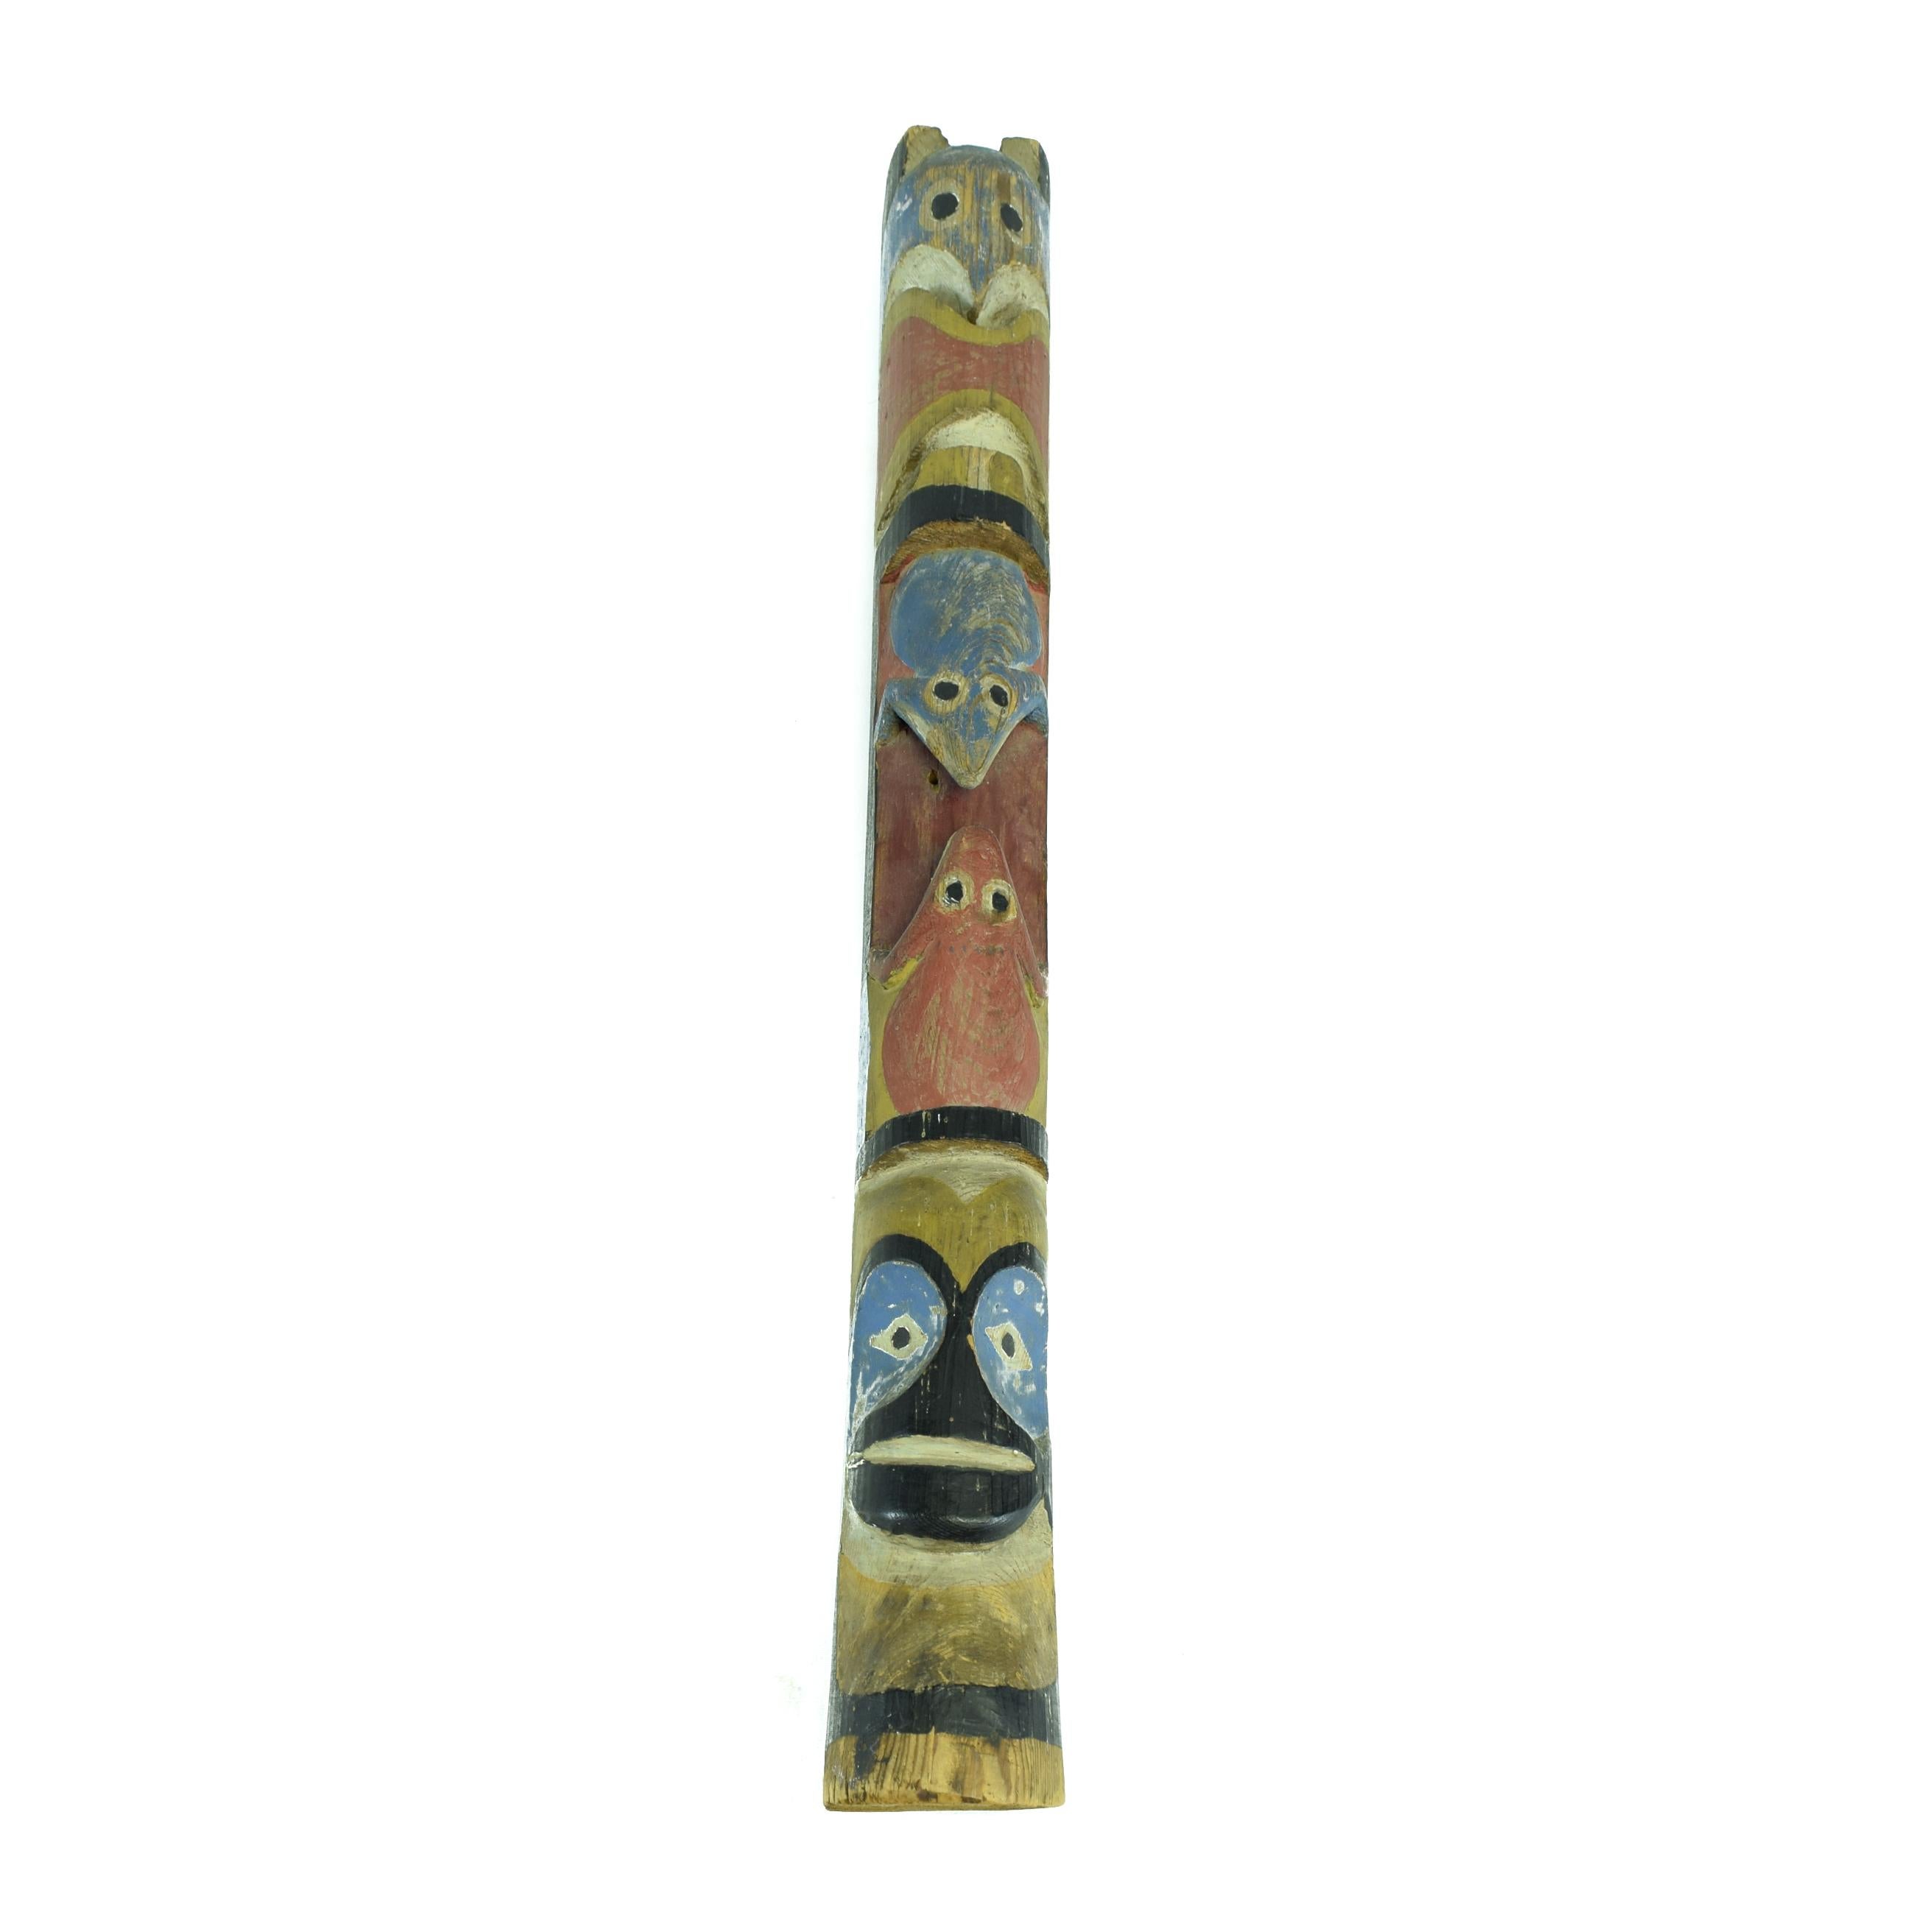 Cette paire de totems Nuu-chah-nulth colorés de plus grande taille a probablement été fabriquée pour un magasin de curiosités de Seattle ou de Victoria vers 1915. Les poteaux ont encore leur peinture d'origine et ont une patine fantastique. Le mât